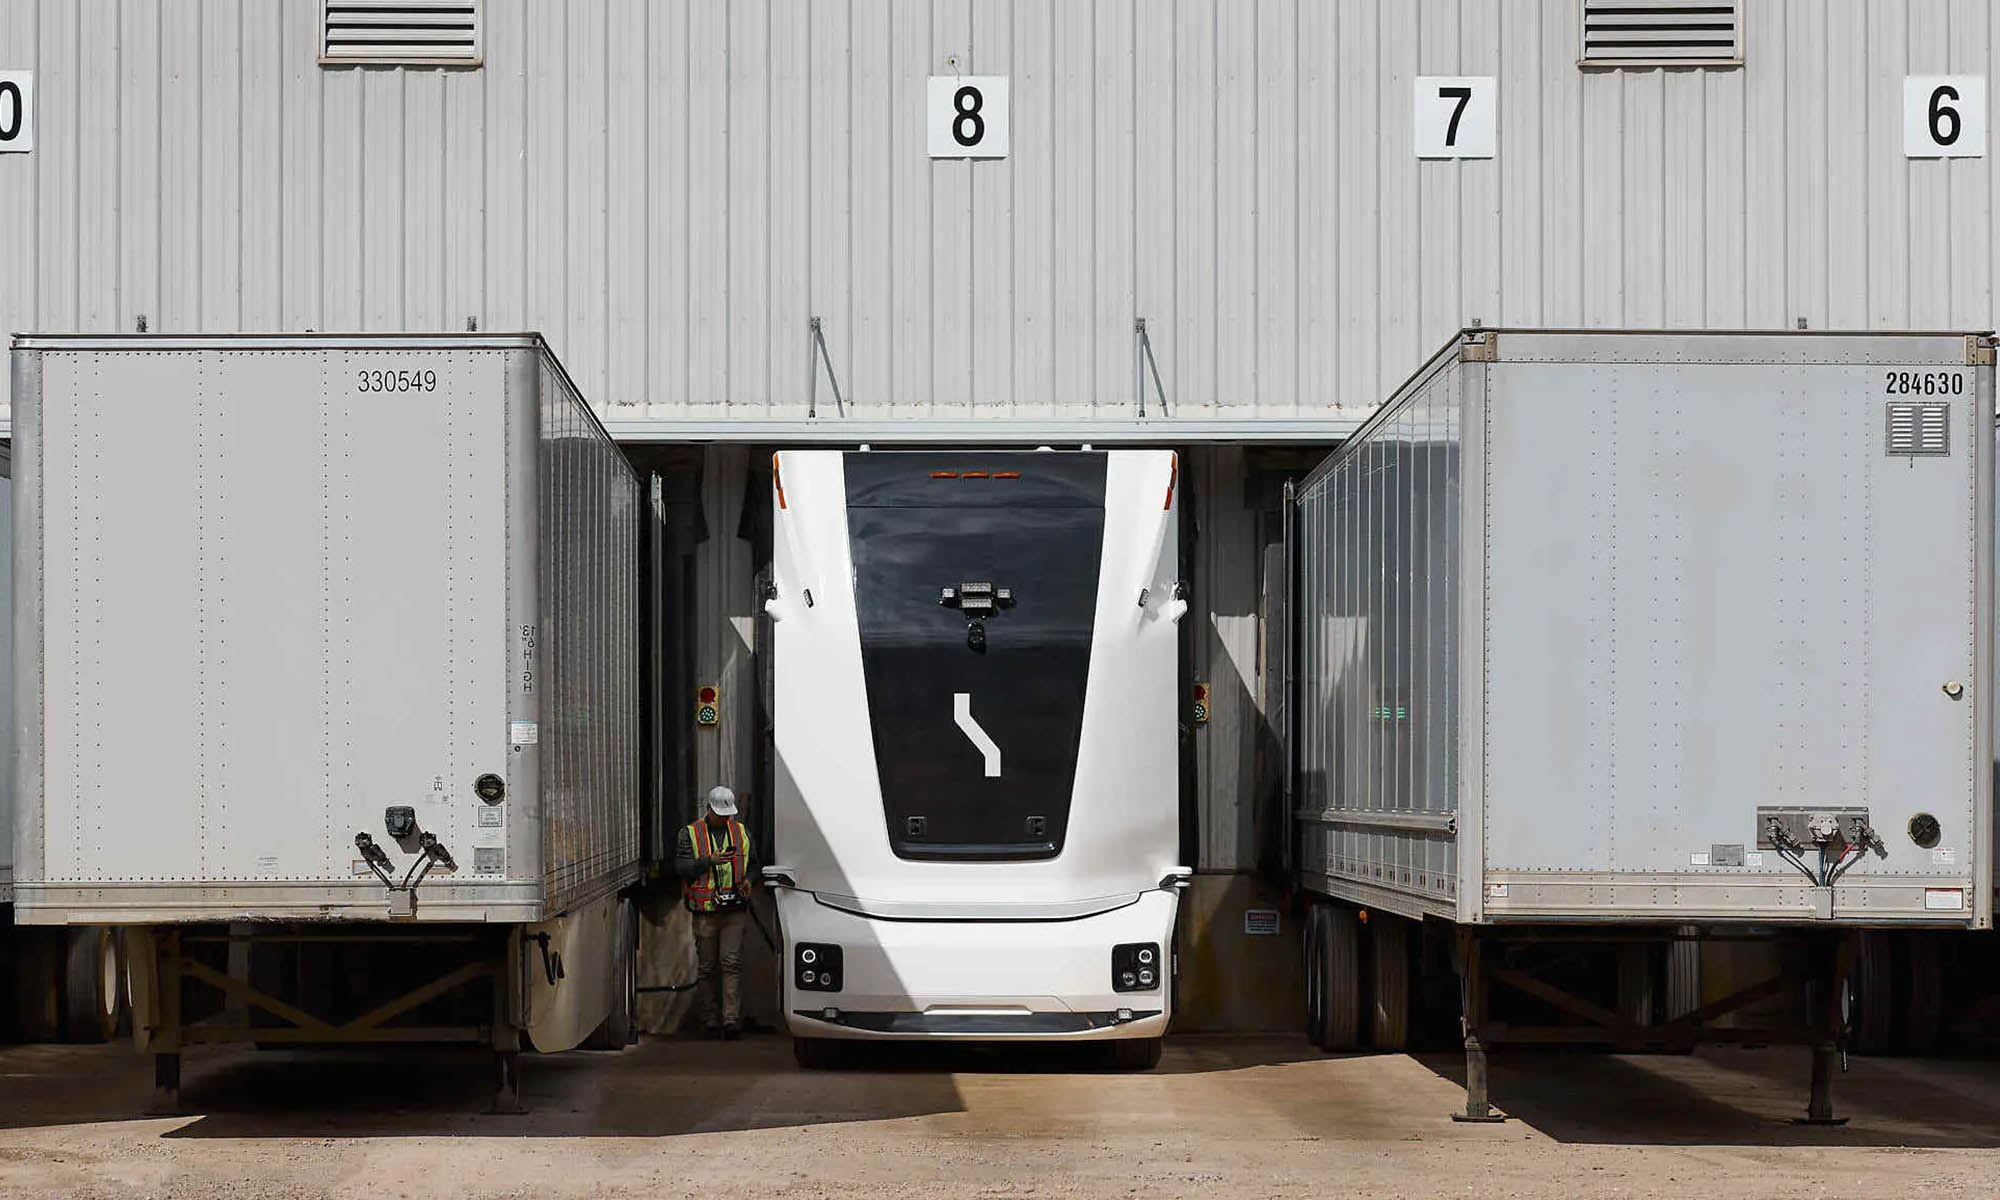 El camión eléctrico y autónomo transporta mercancías entre una fábrica y un almacén.